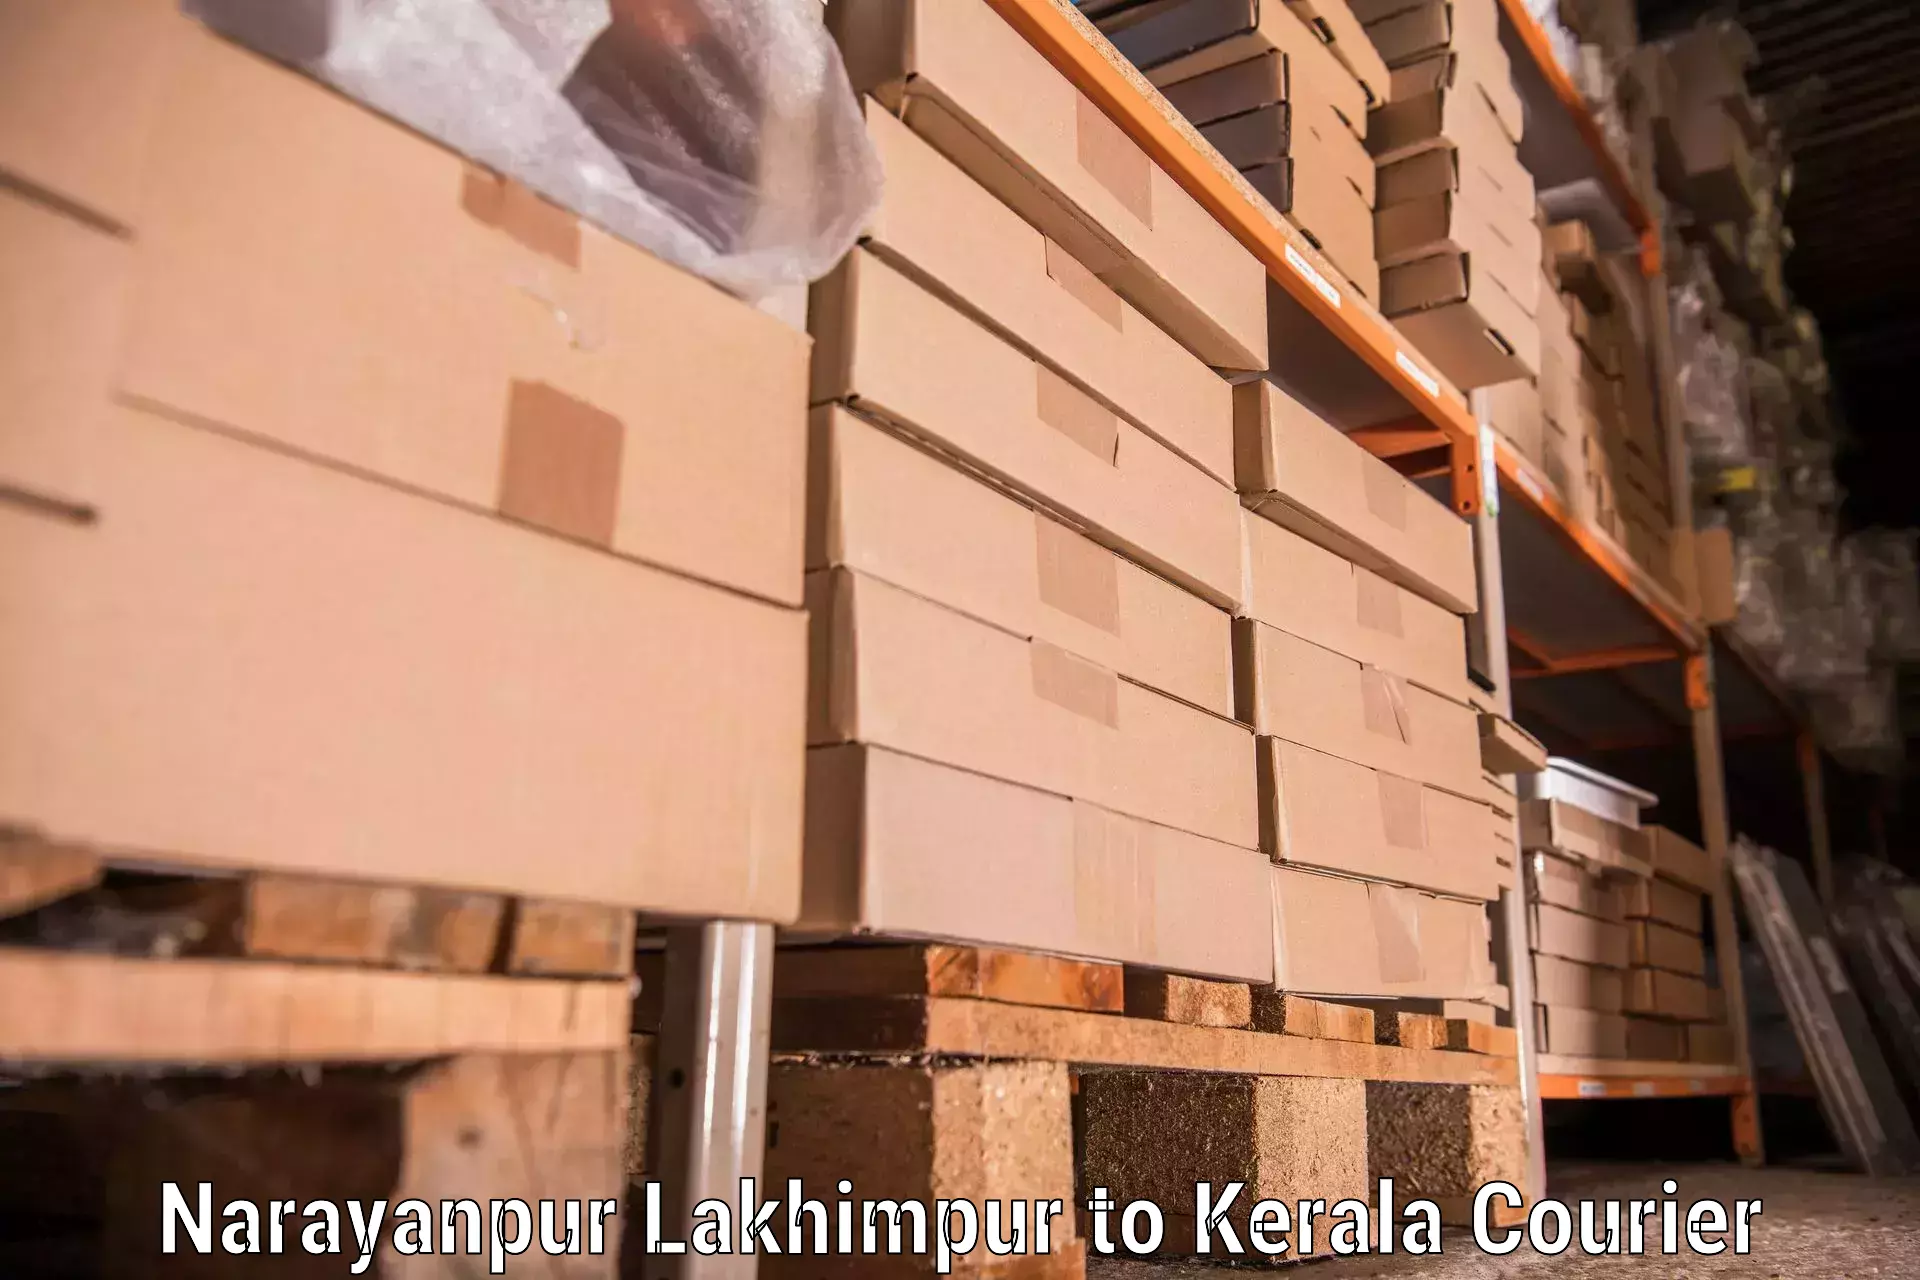 Furniture moving assistance in Narayanpur Lakhimpur to Parakkadavu